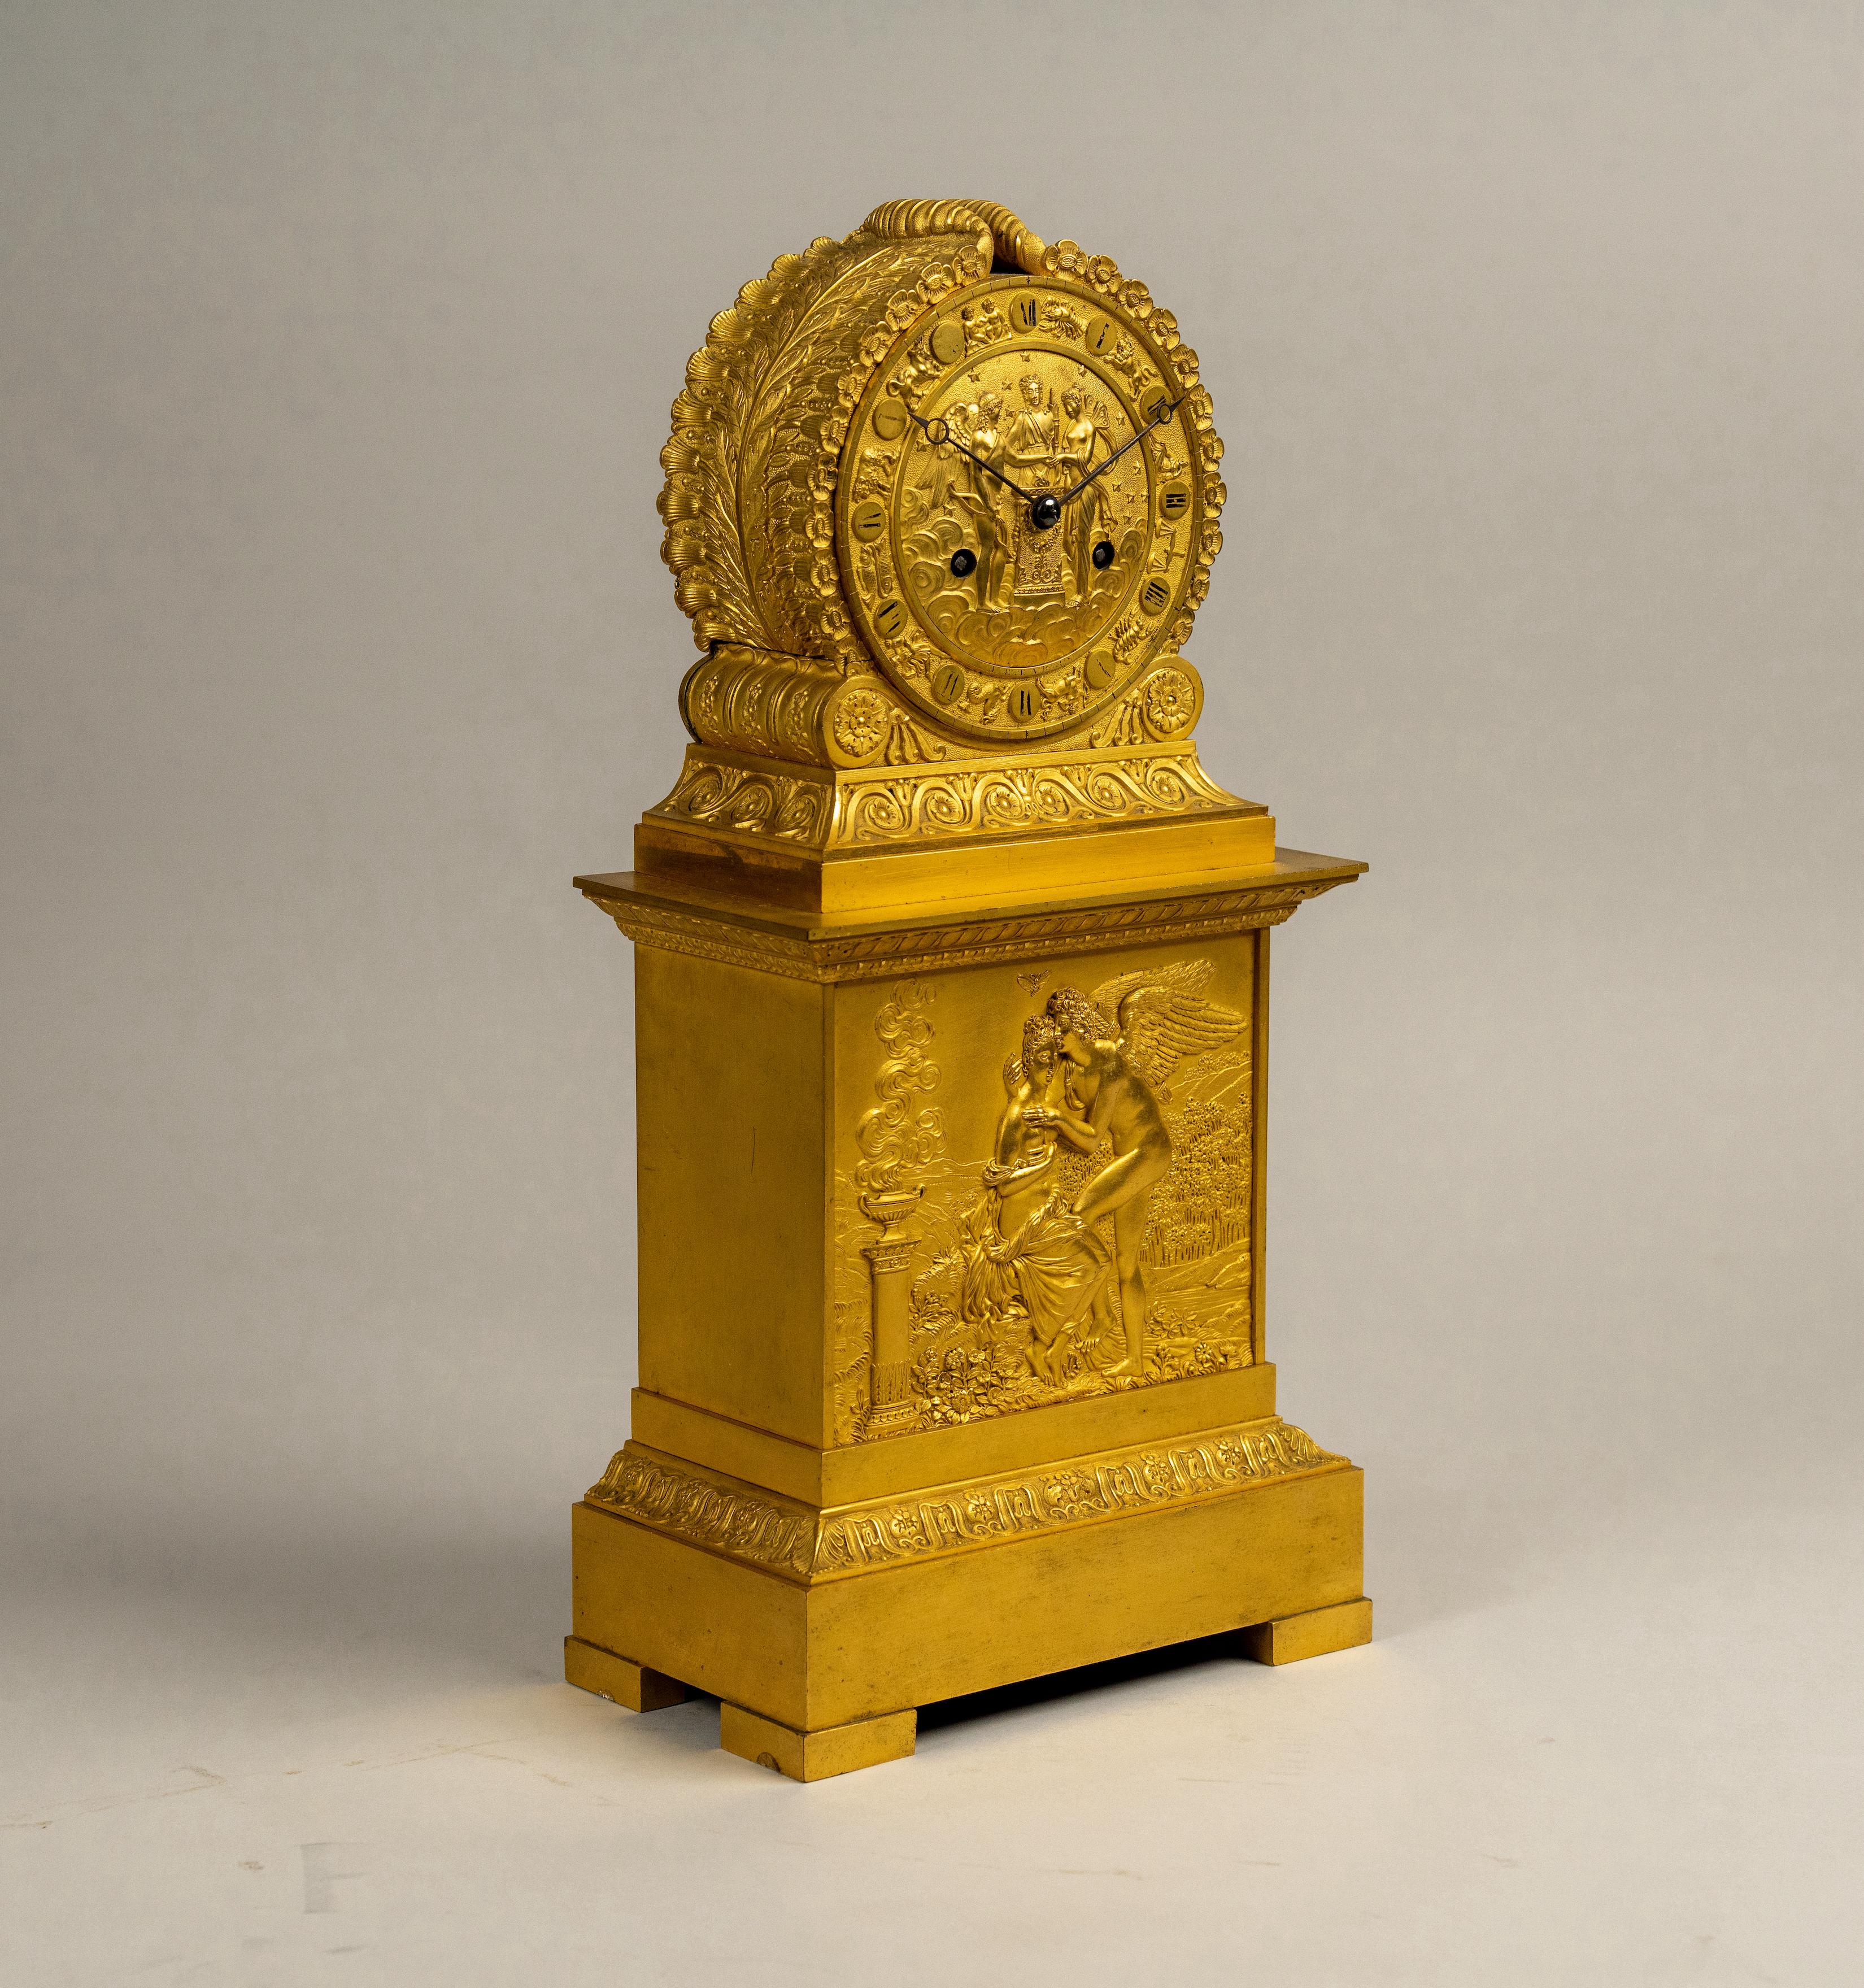 Exquise pendule de cheminée en bronze doré ciselé à la main de style Empire français du début du XIXe siècle. Elle repose sur des pieds en équerre et une base rectangulaire. Au-dessus, une superbe plaque en médaillon représentant Psyché et Cupidon